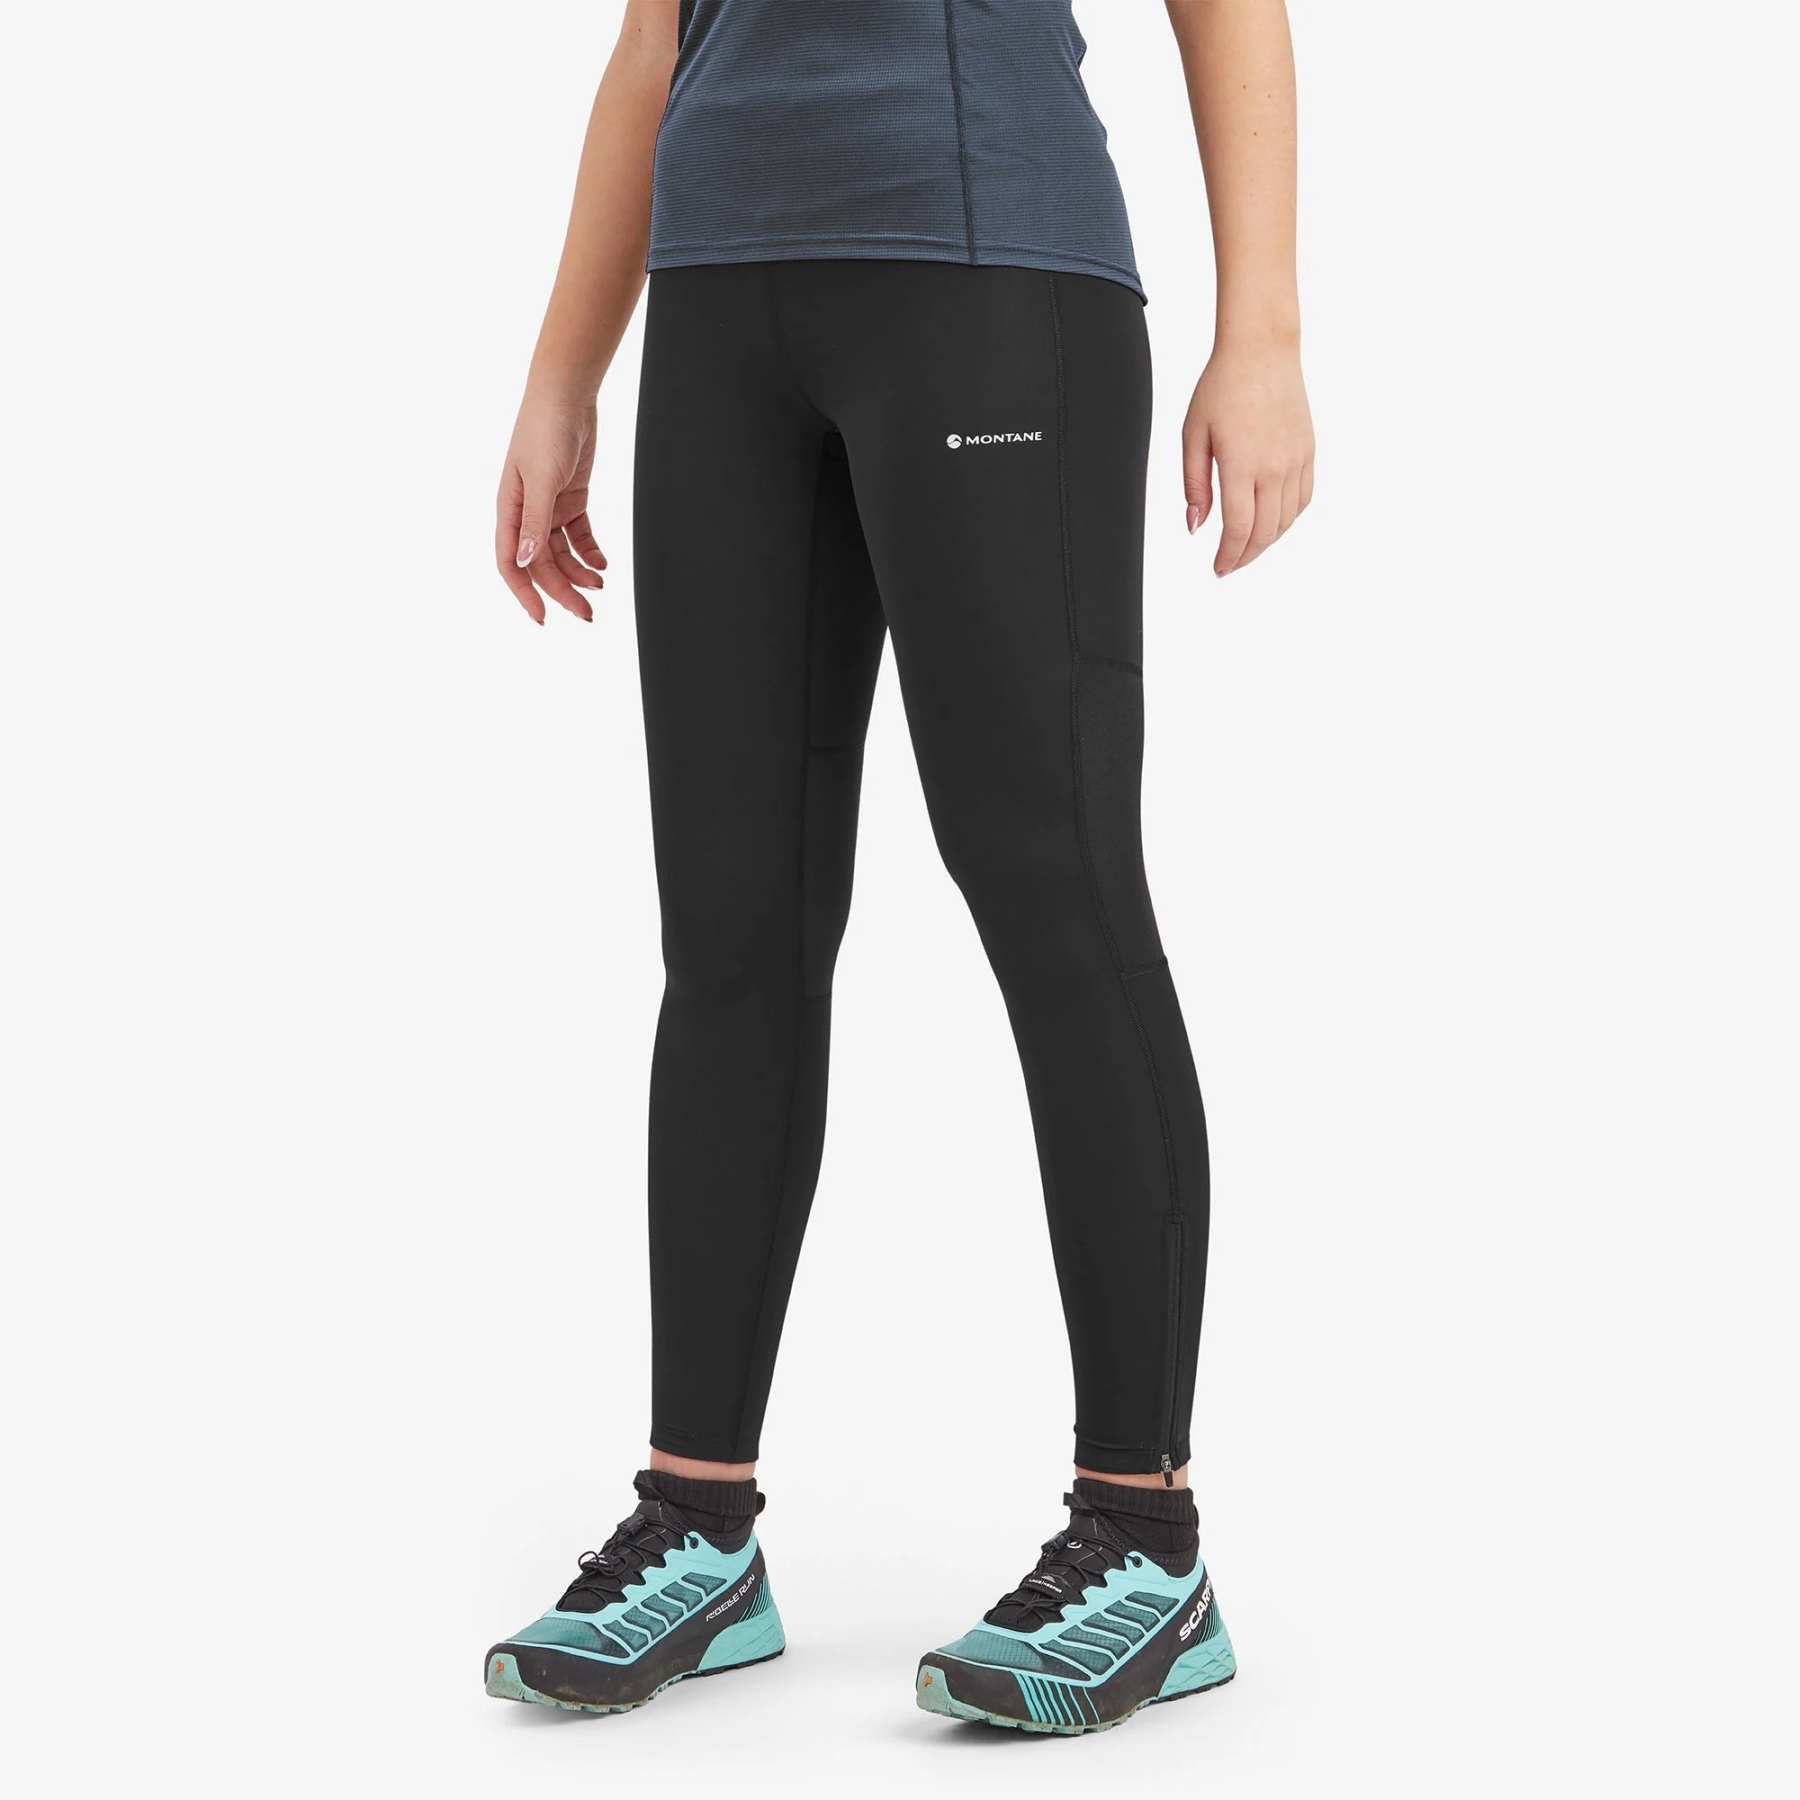 Malla Running Nike - Negro - Mallas Running Mujer talla S